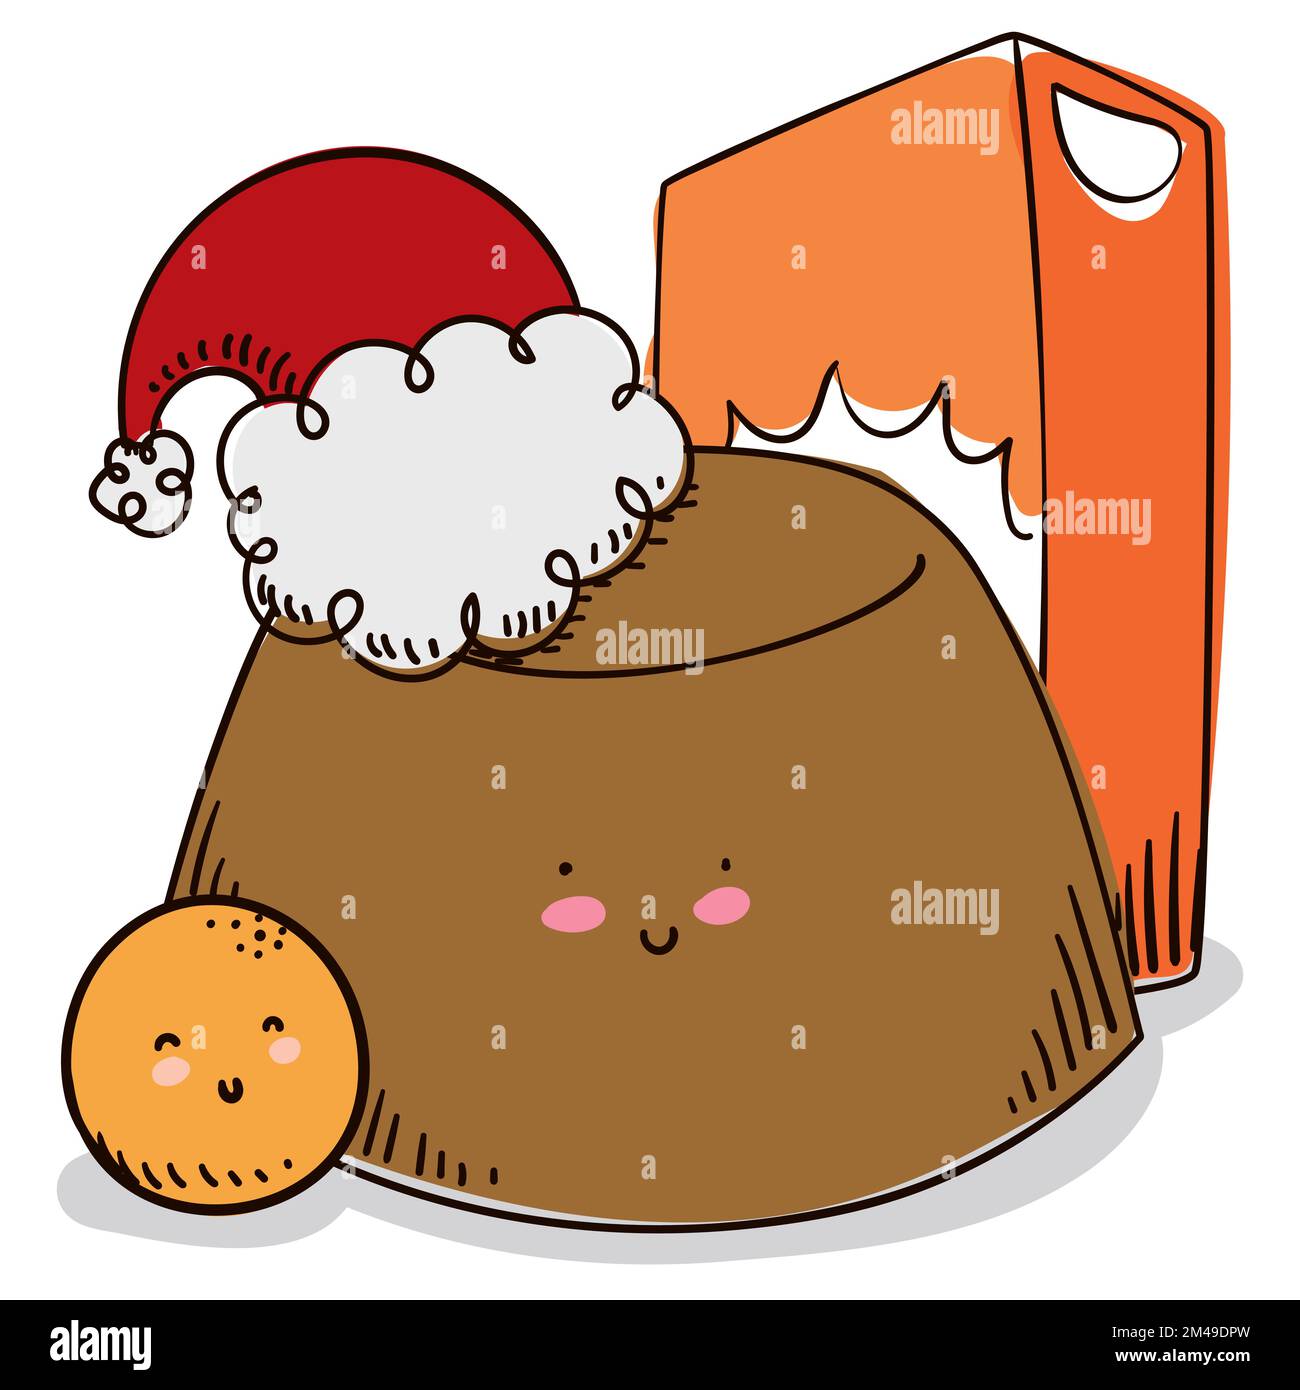 Schachtel mit süßem Vanillesauce mit Weihnachtsmannmütze und winziger, runder Ziege zur Feier der kolumbianischen Weihnachtszeit. Stock Vektor